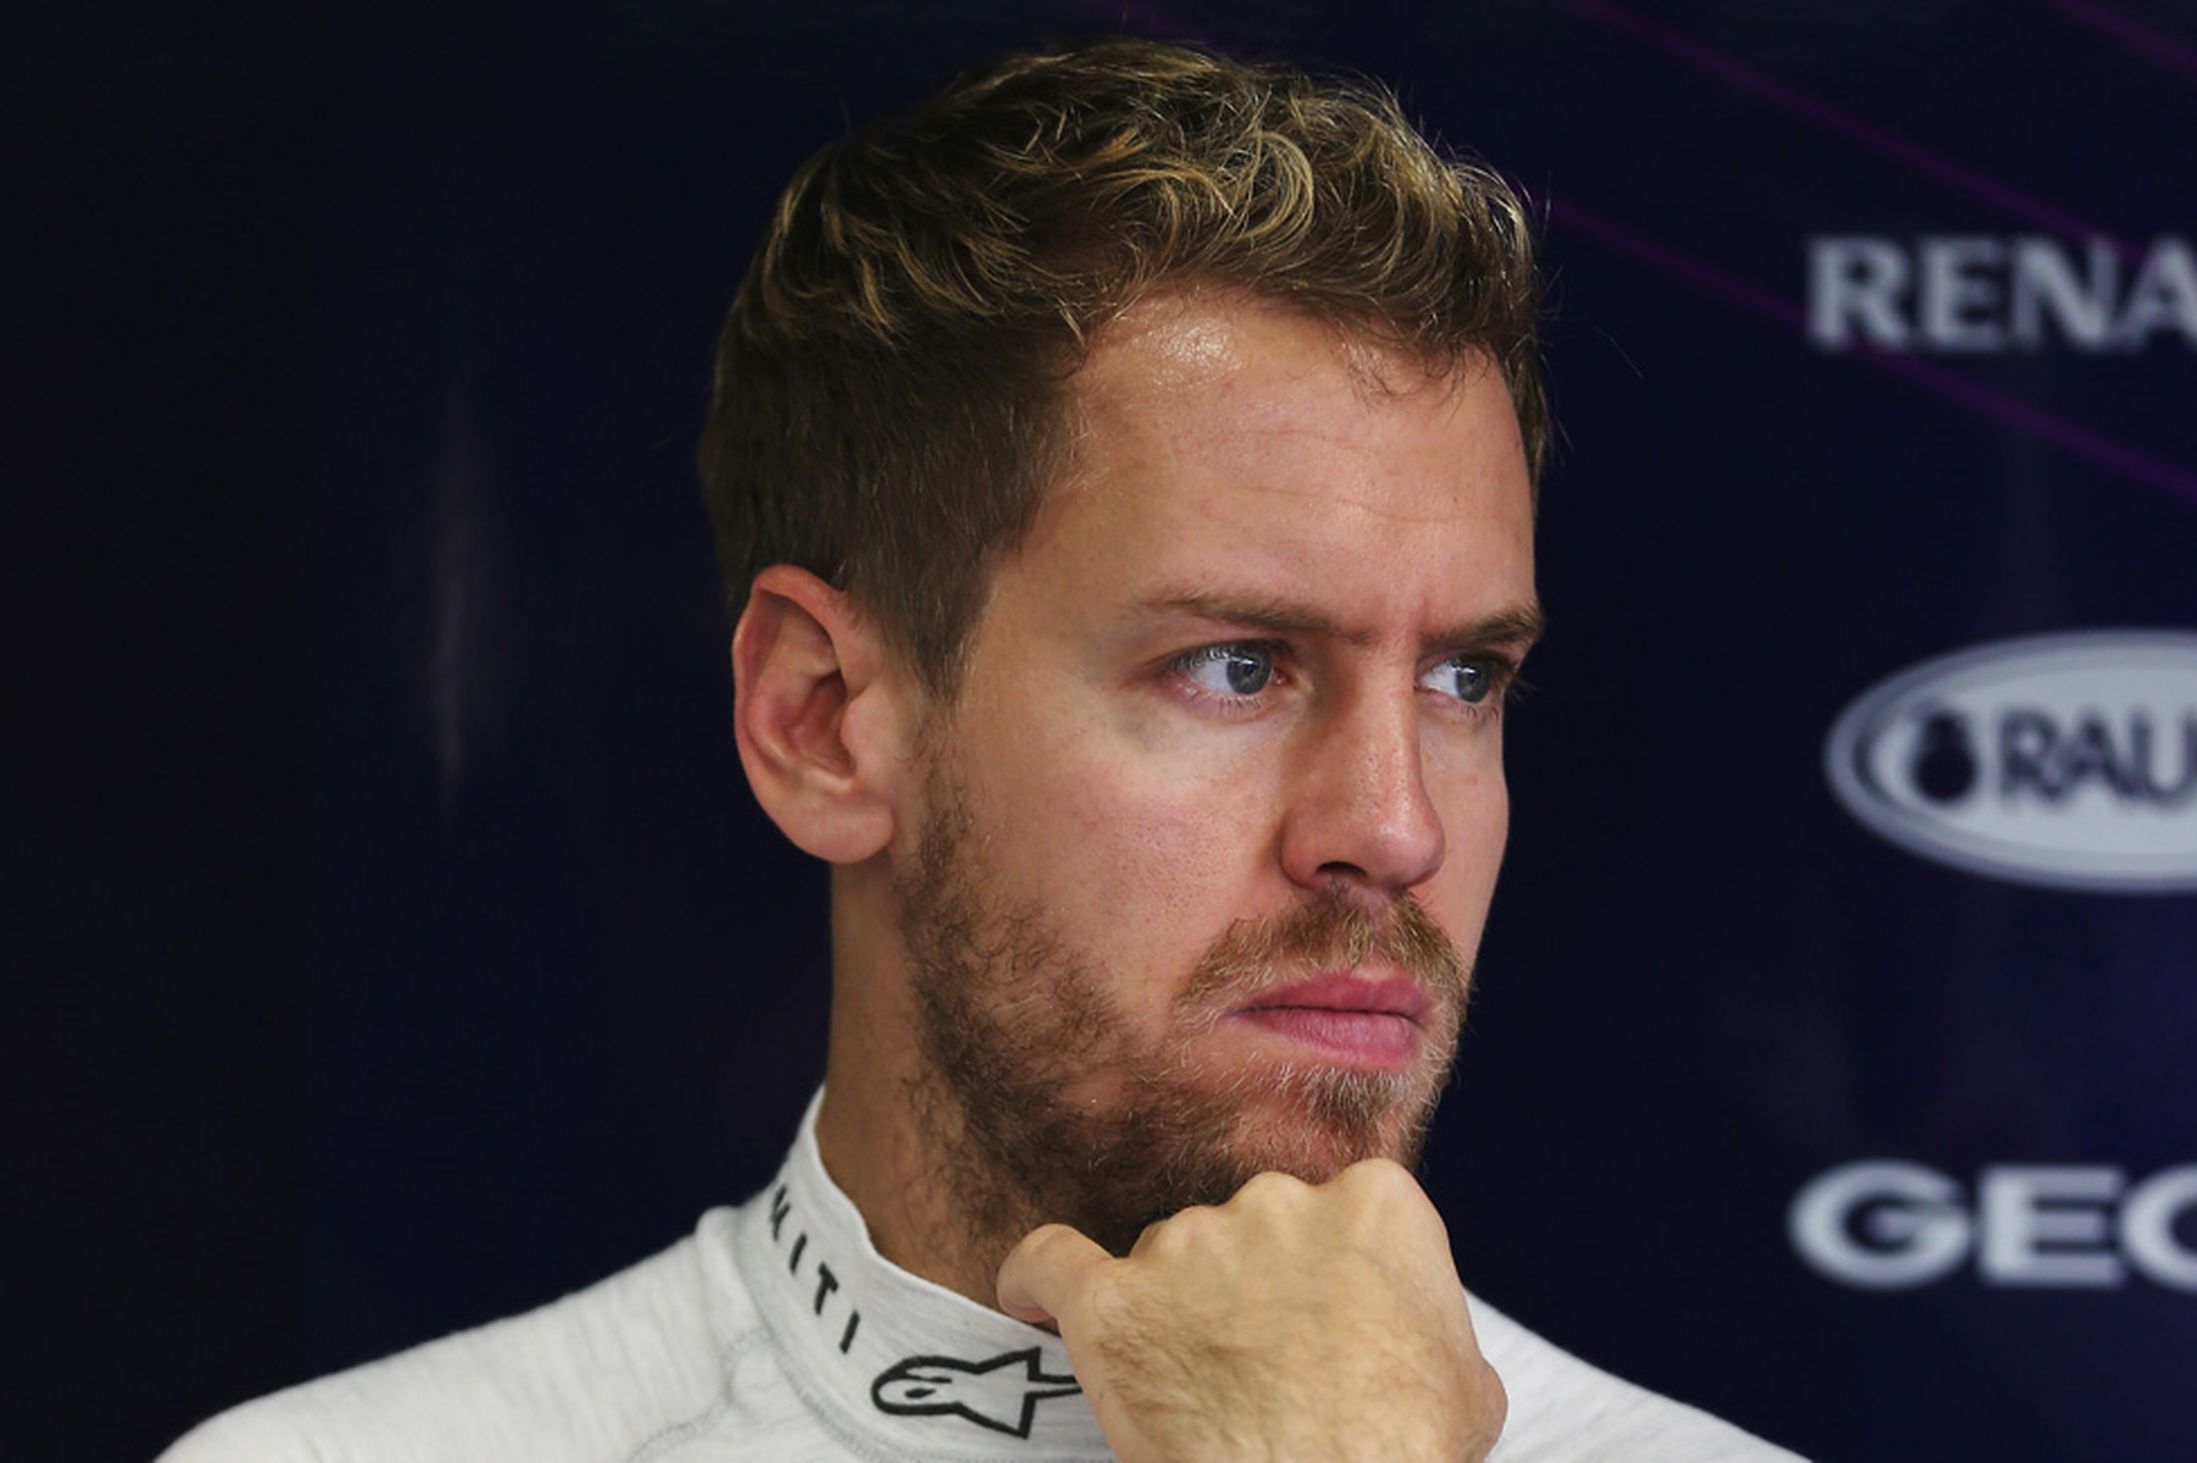 Sebastian Vettel 2014